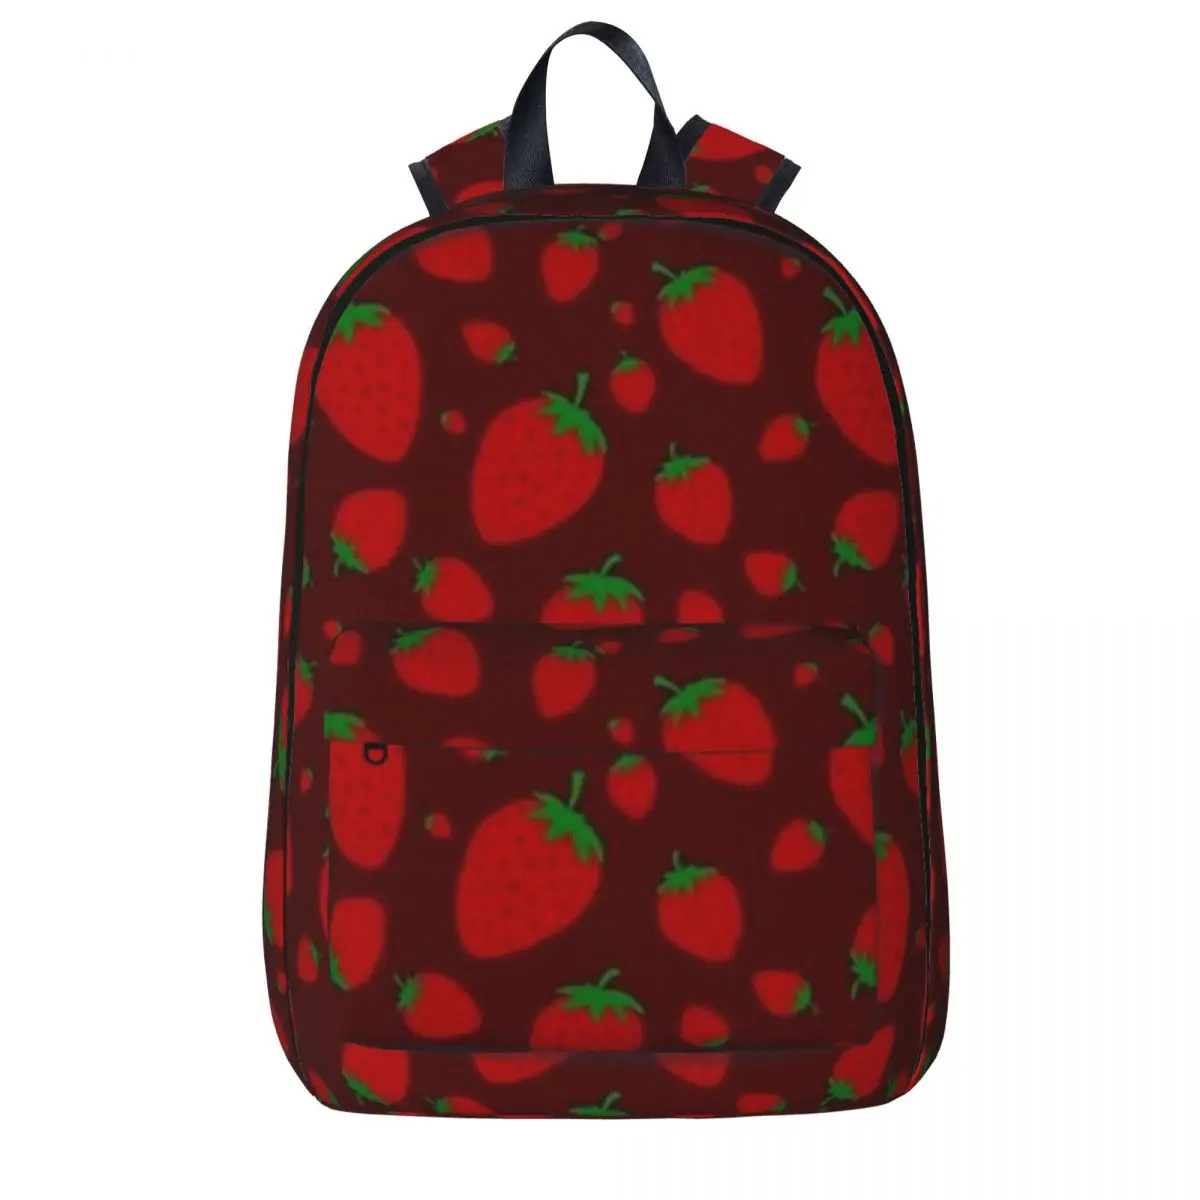 

Strawberries Pattern With Dark Red Background Backpack Boys Girls Bookbag Students School Bag Kids Laptop Rucksack Shoulder Bag